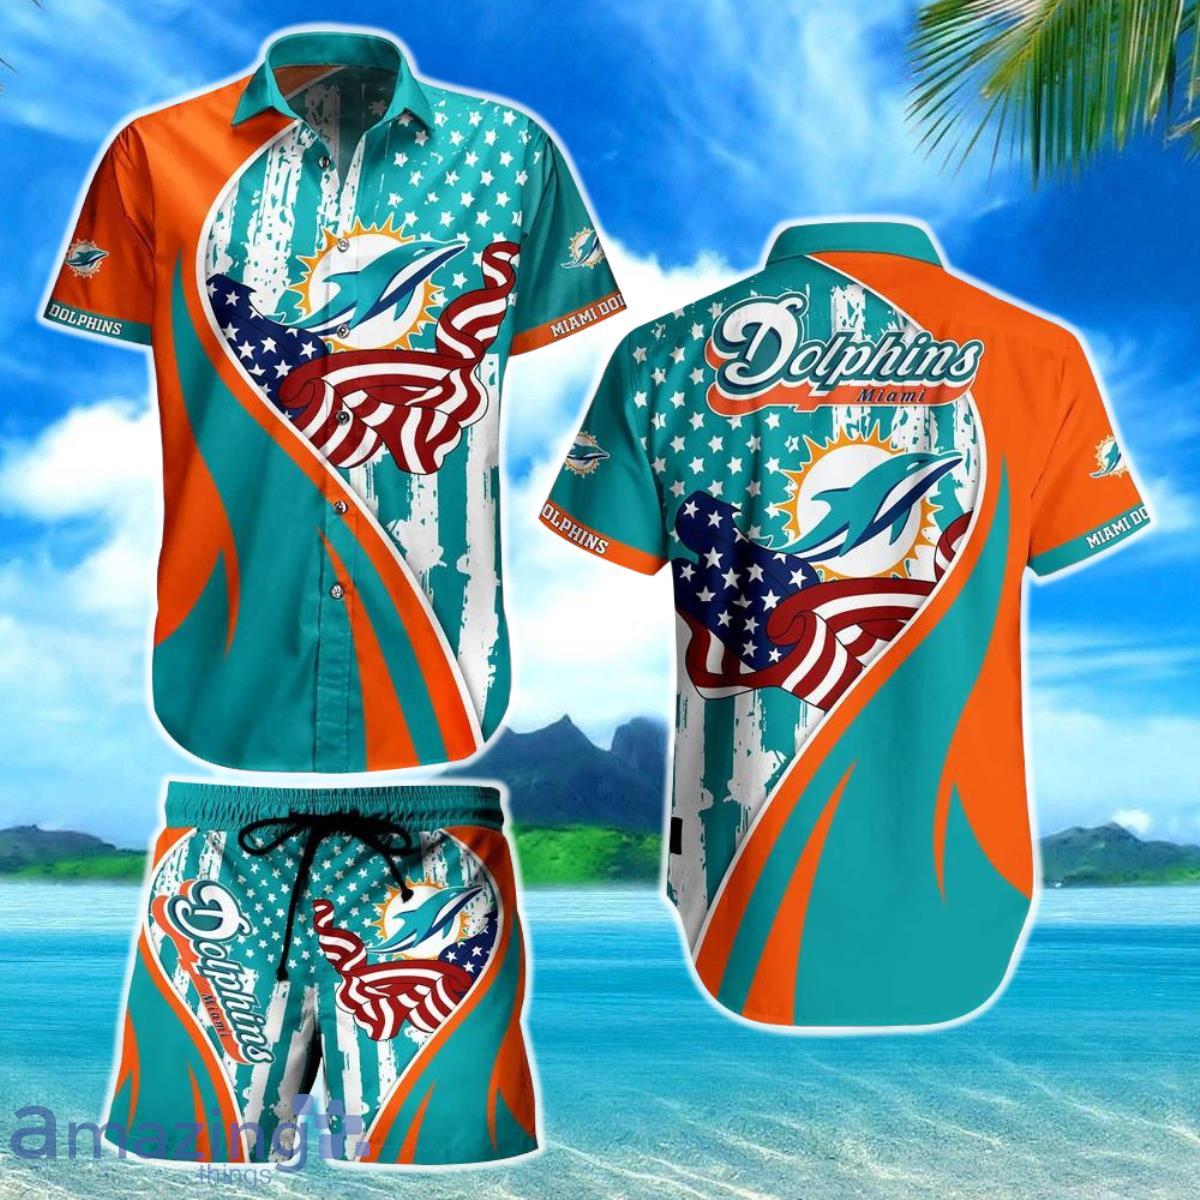 San Francisco Giants Vintage Mlb Hawaiian Shirt And Short Gift For Summer